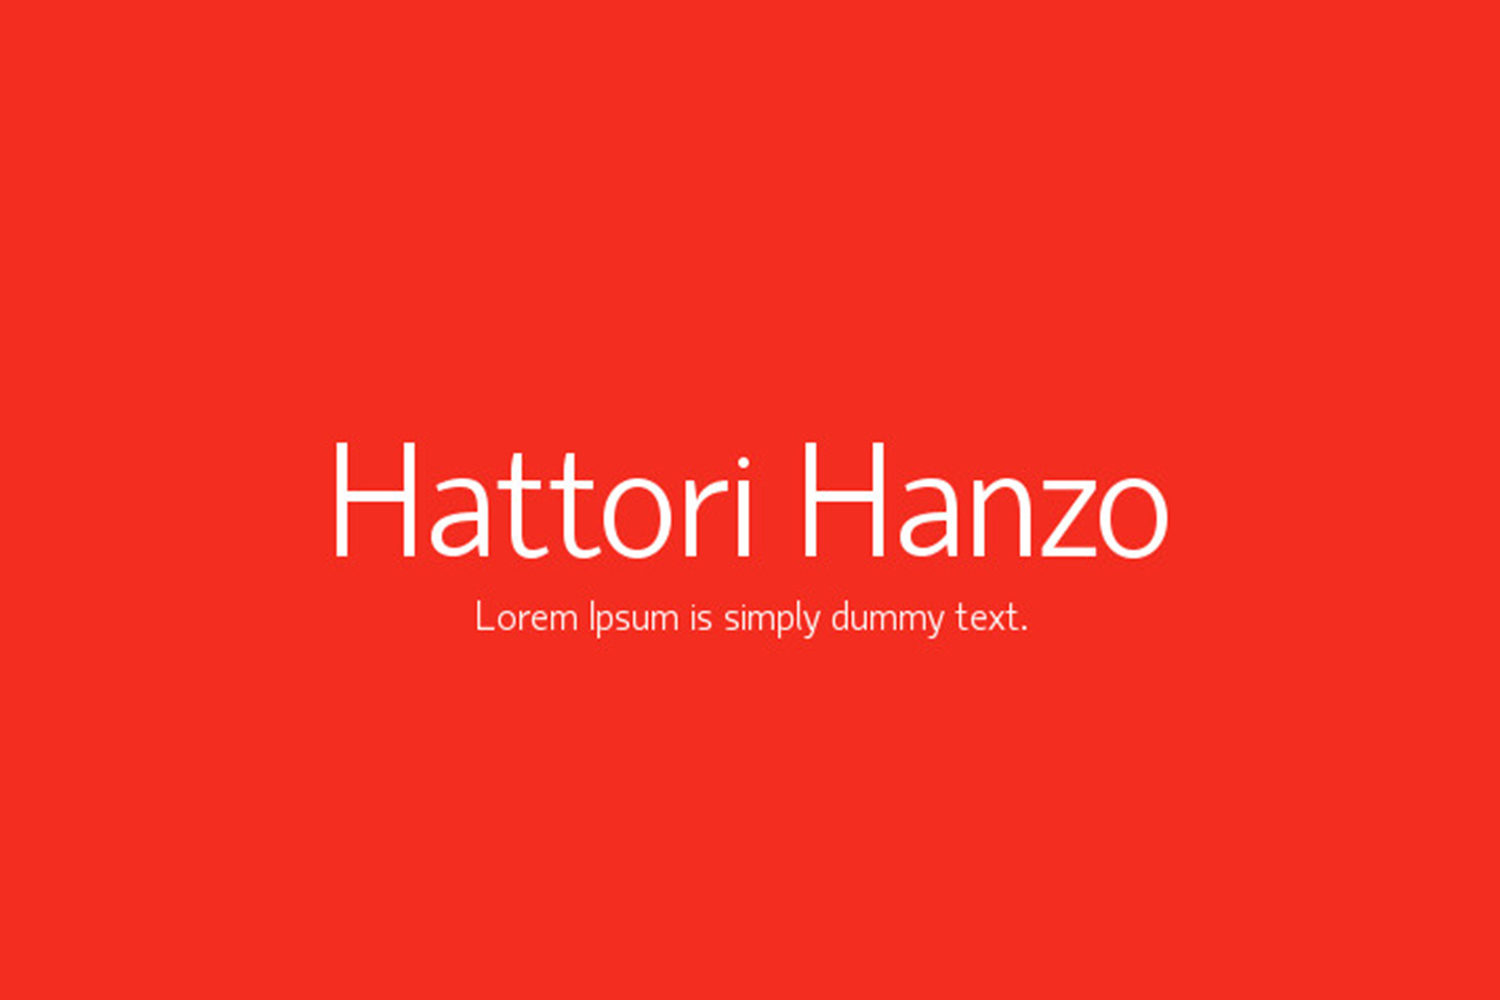 Ejemplo de fuente Hattori Hanzo